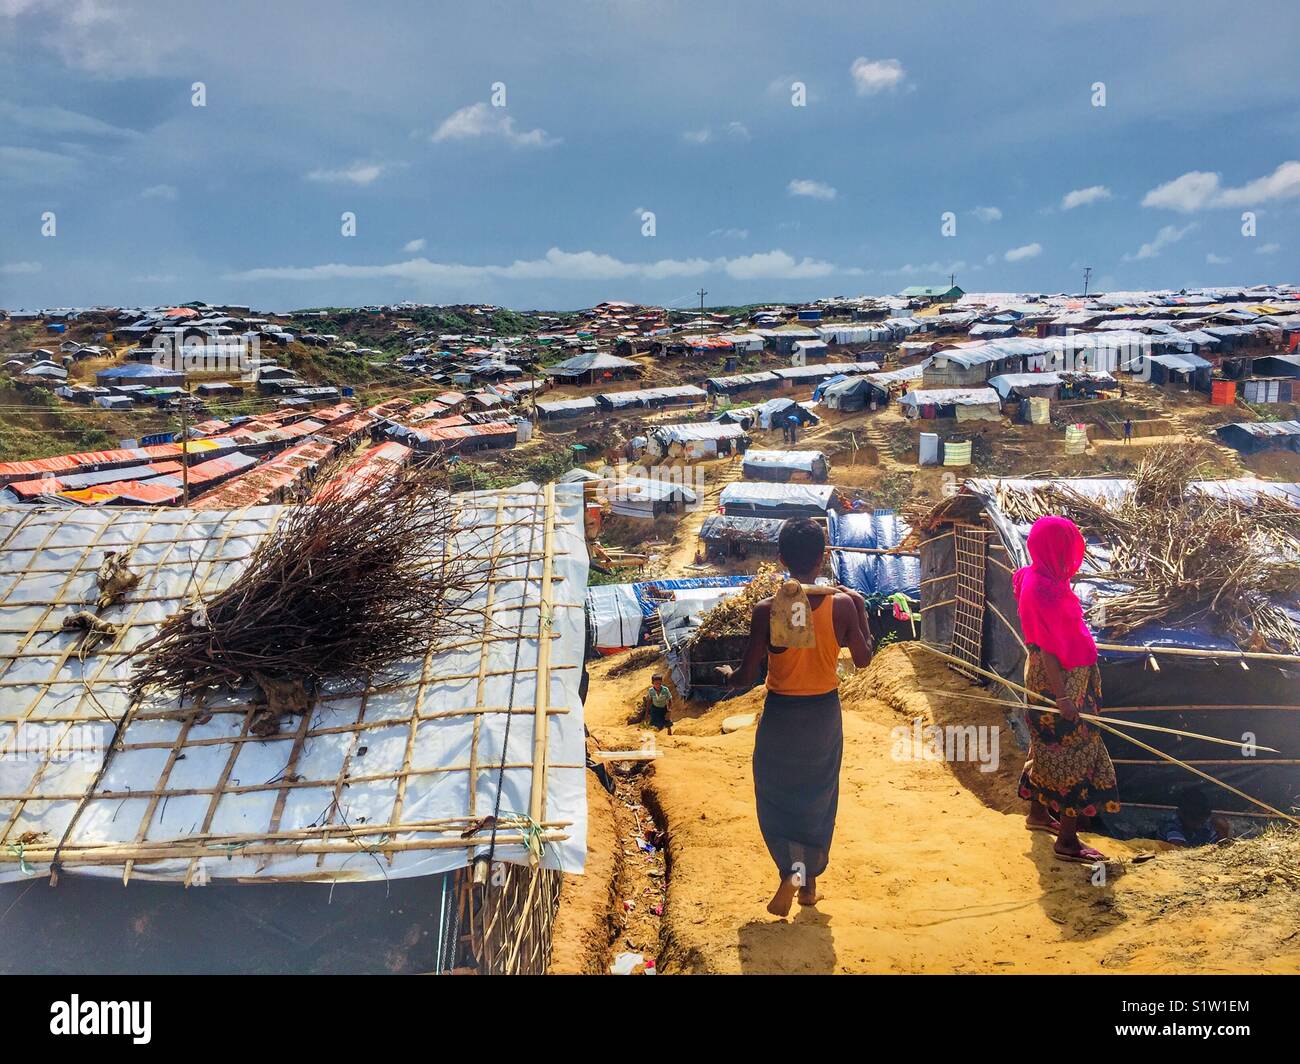 Rohingya refugee camp in Cox’s Bazaar, Bangladesh Stock Photo